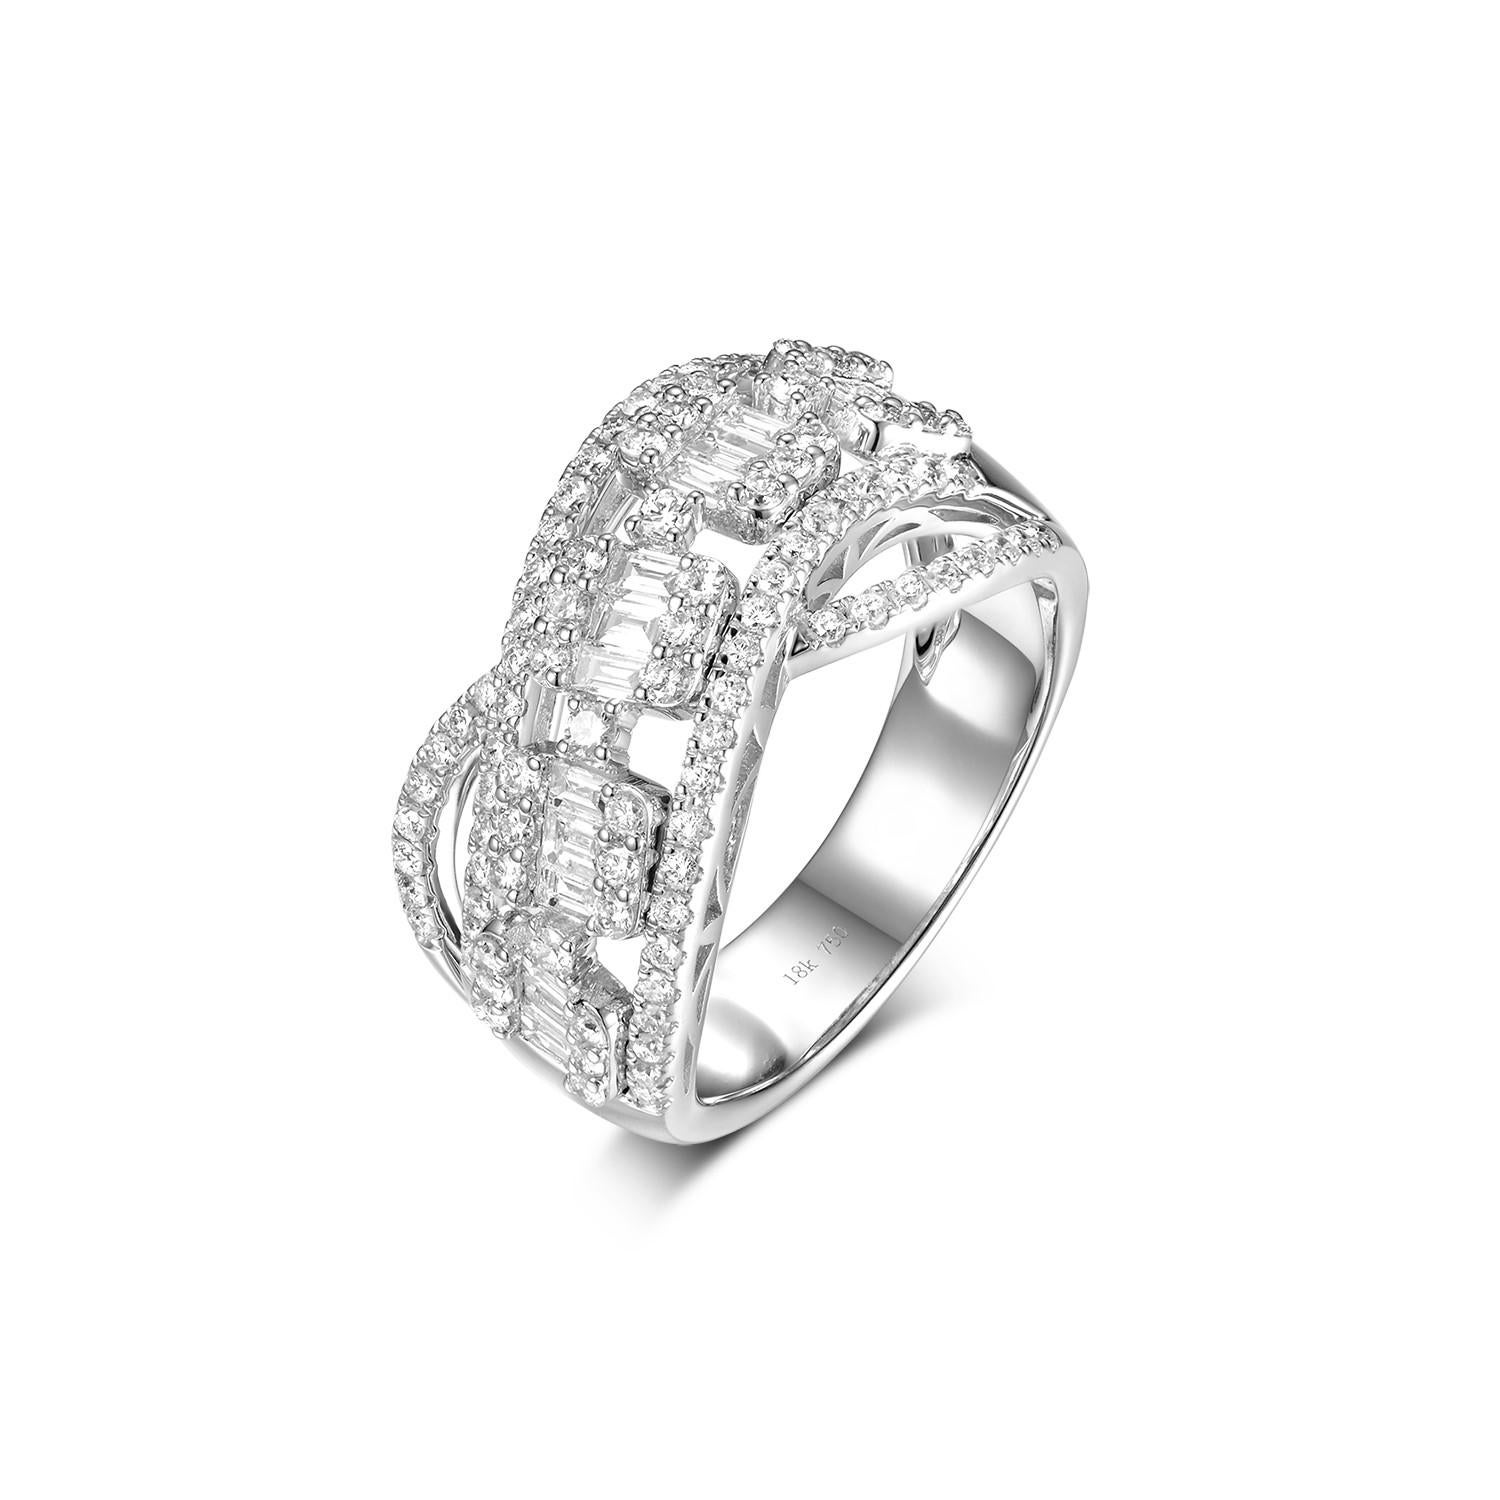 Dieser Ring ist mit einem konischen Diamanten von 0,38 Karat und einem runden Diamanten von 0,74 Karat besetzt.  Ein einfaches, aber elegantes Stück.  Wirklich ein besonderes Geschenk für einen besonderen Menschen.

US 7
Größenanpassung ist